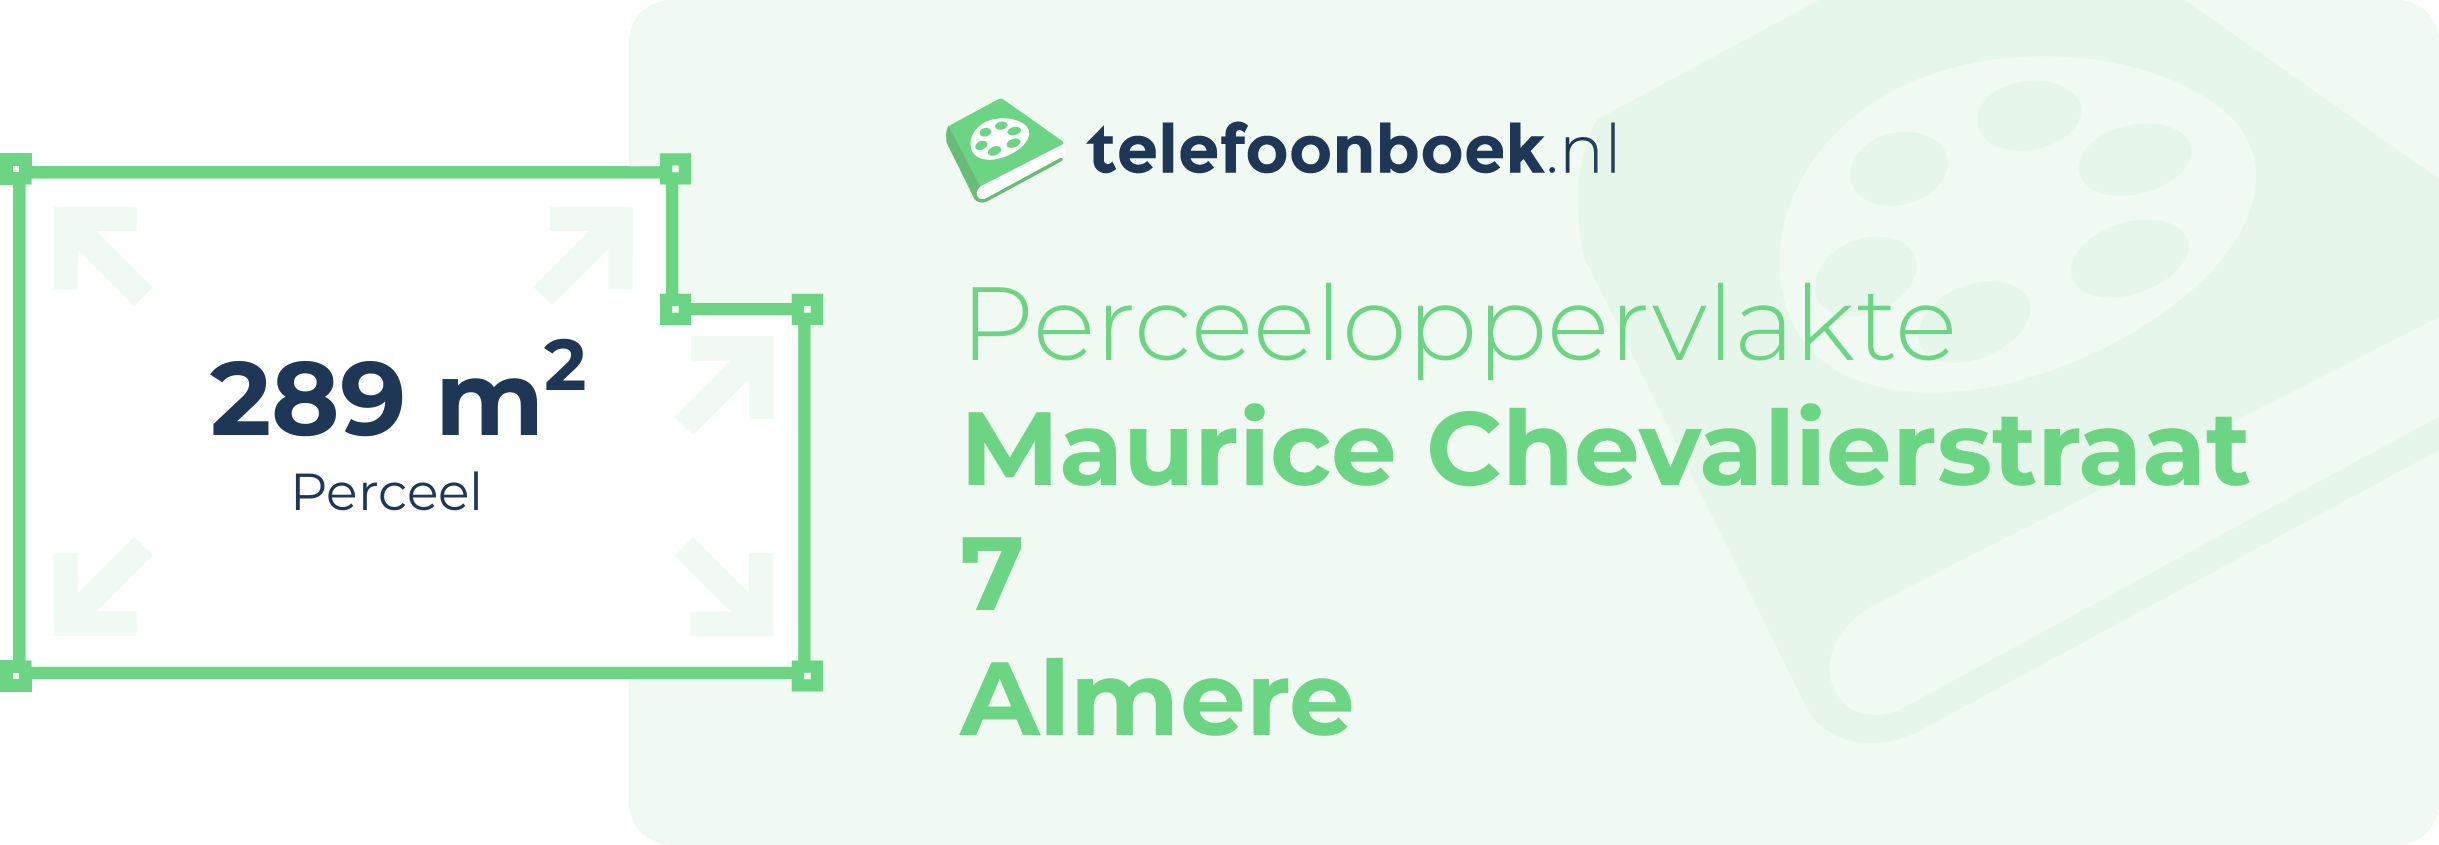 Perceeloppervlakte Maurice Chevalierstraat 7 Almere